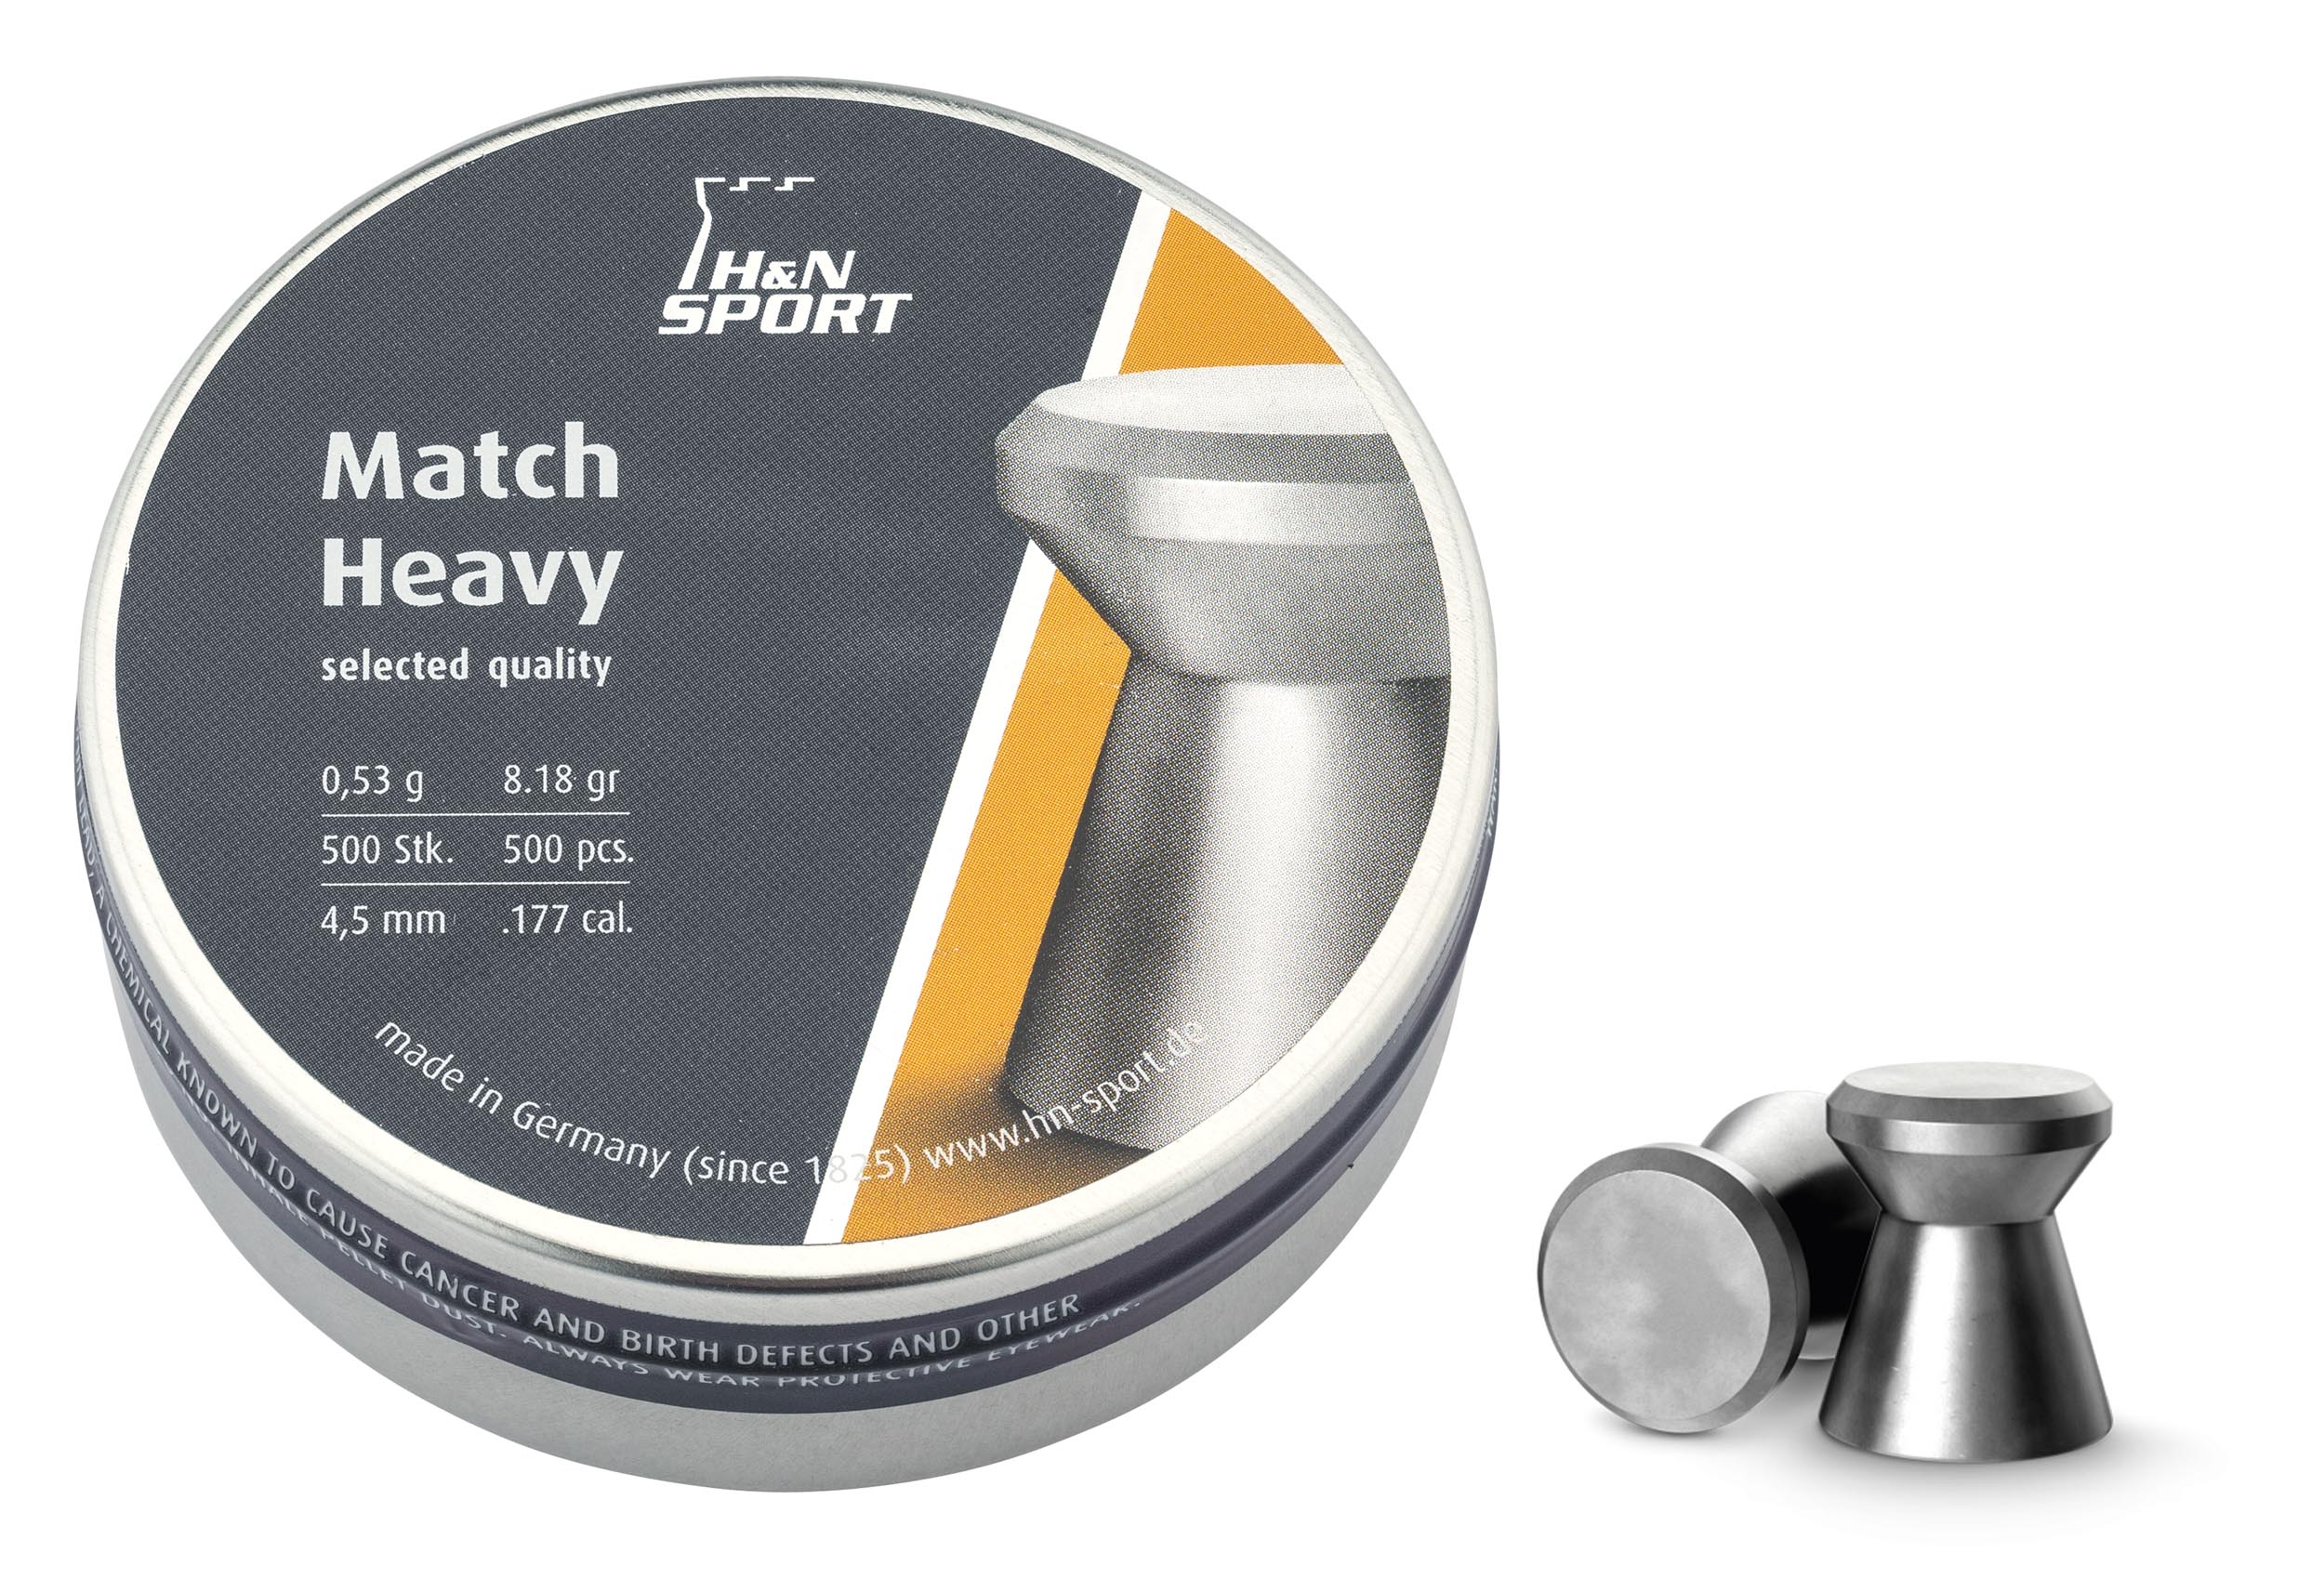 PB316-12 Leads Match Heavy cal. 4.5 mm